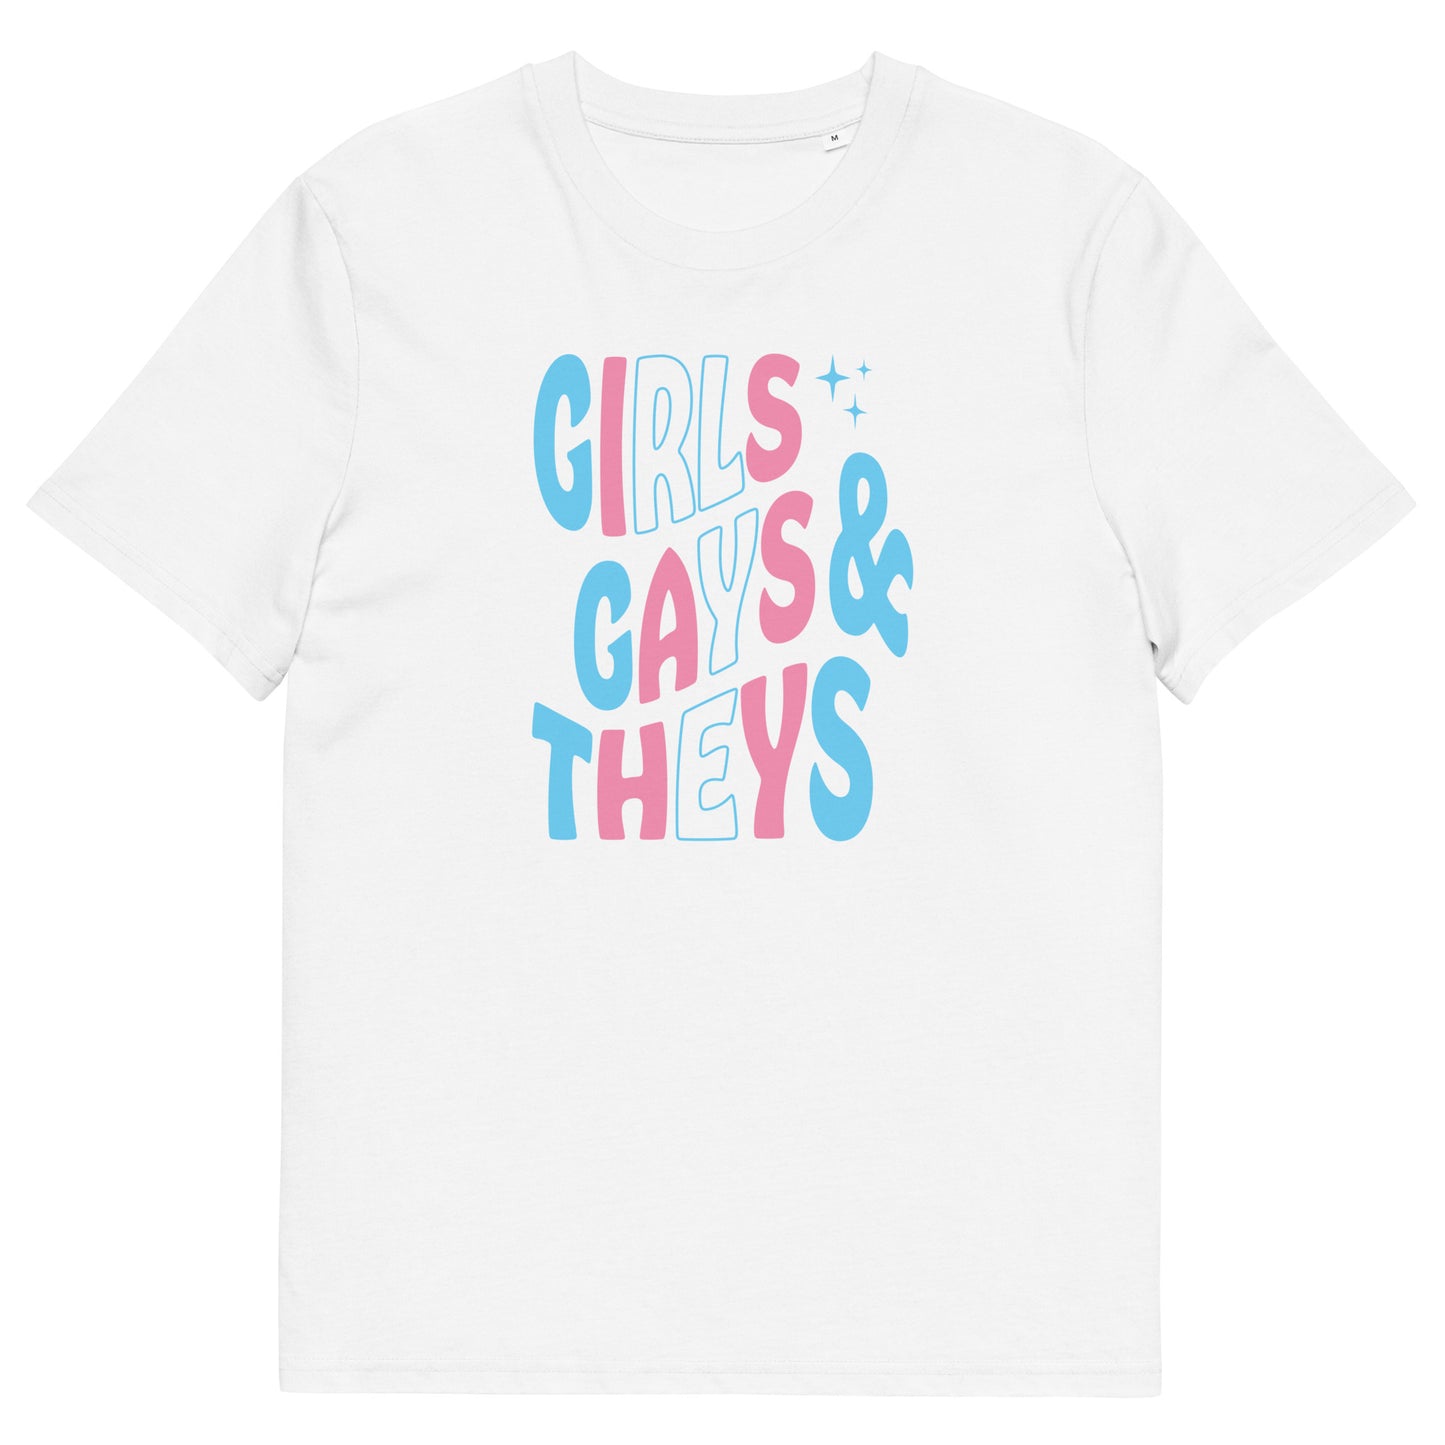 Organic Cotton T-shirt Print: Girls Gays & Theys (Trans)